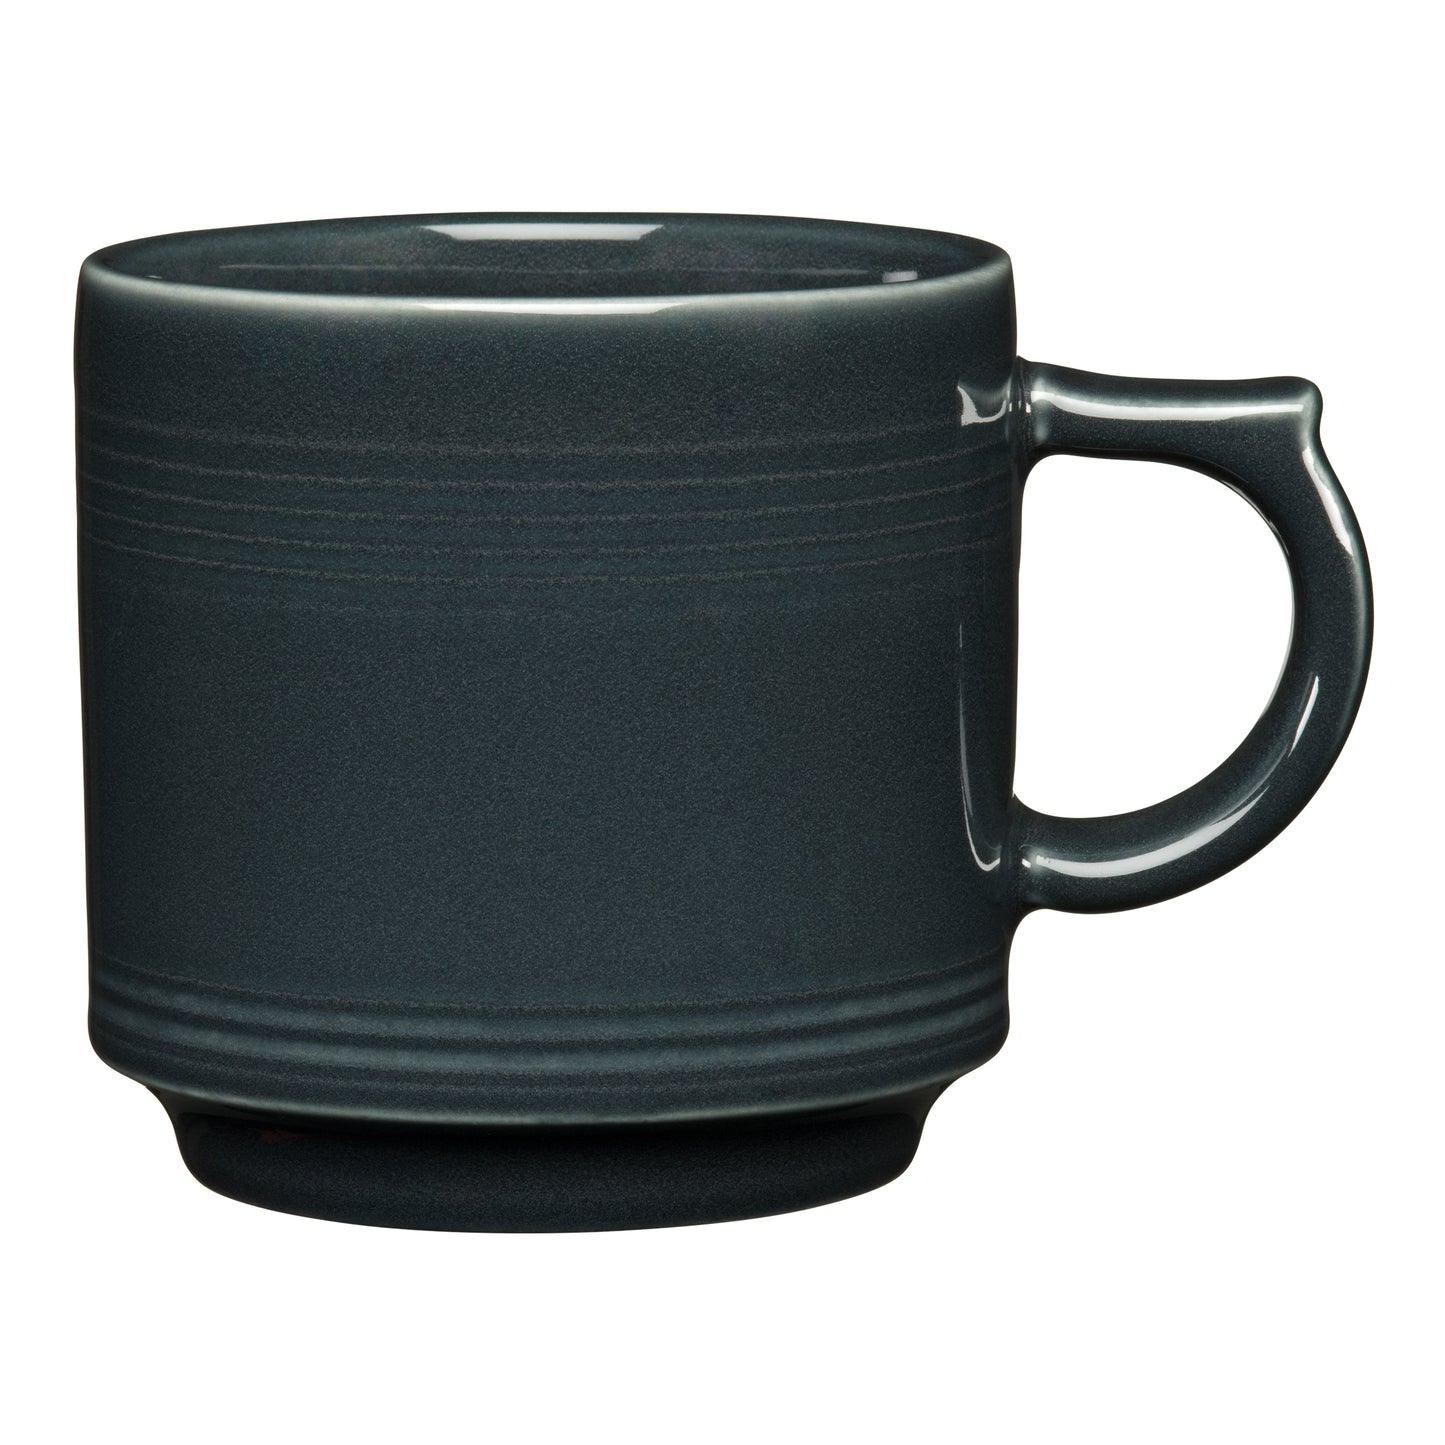 Fiesta® Stacking Mug